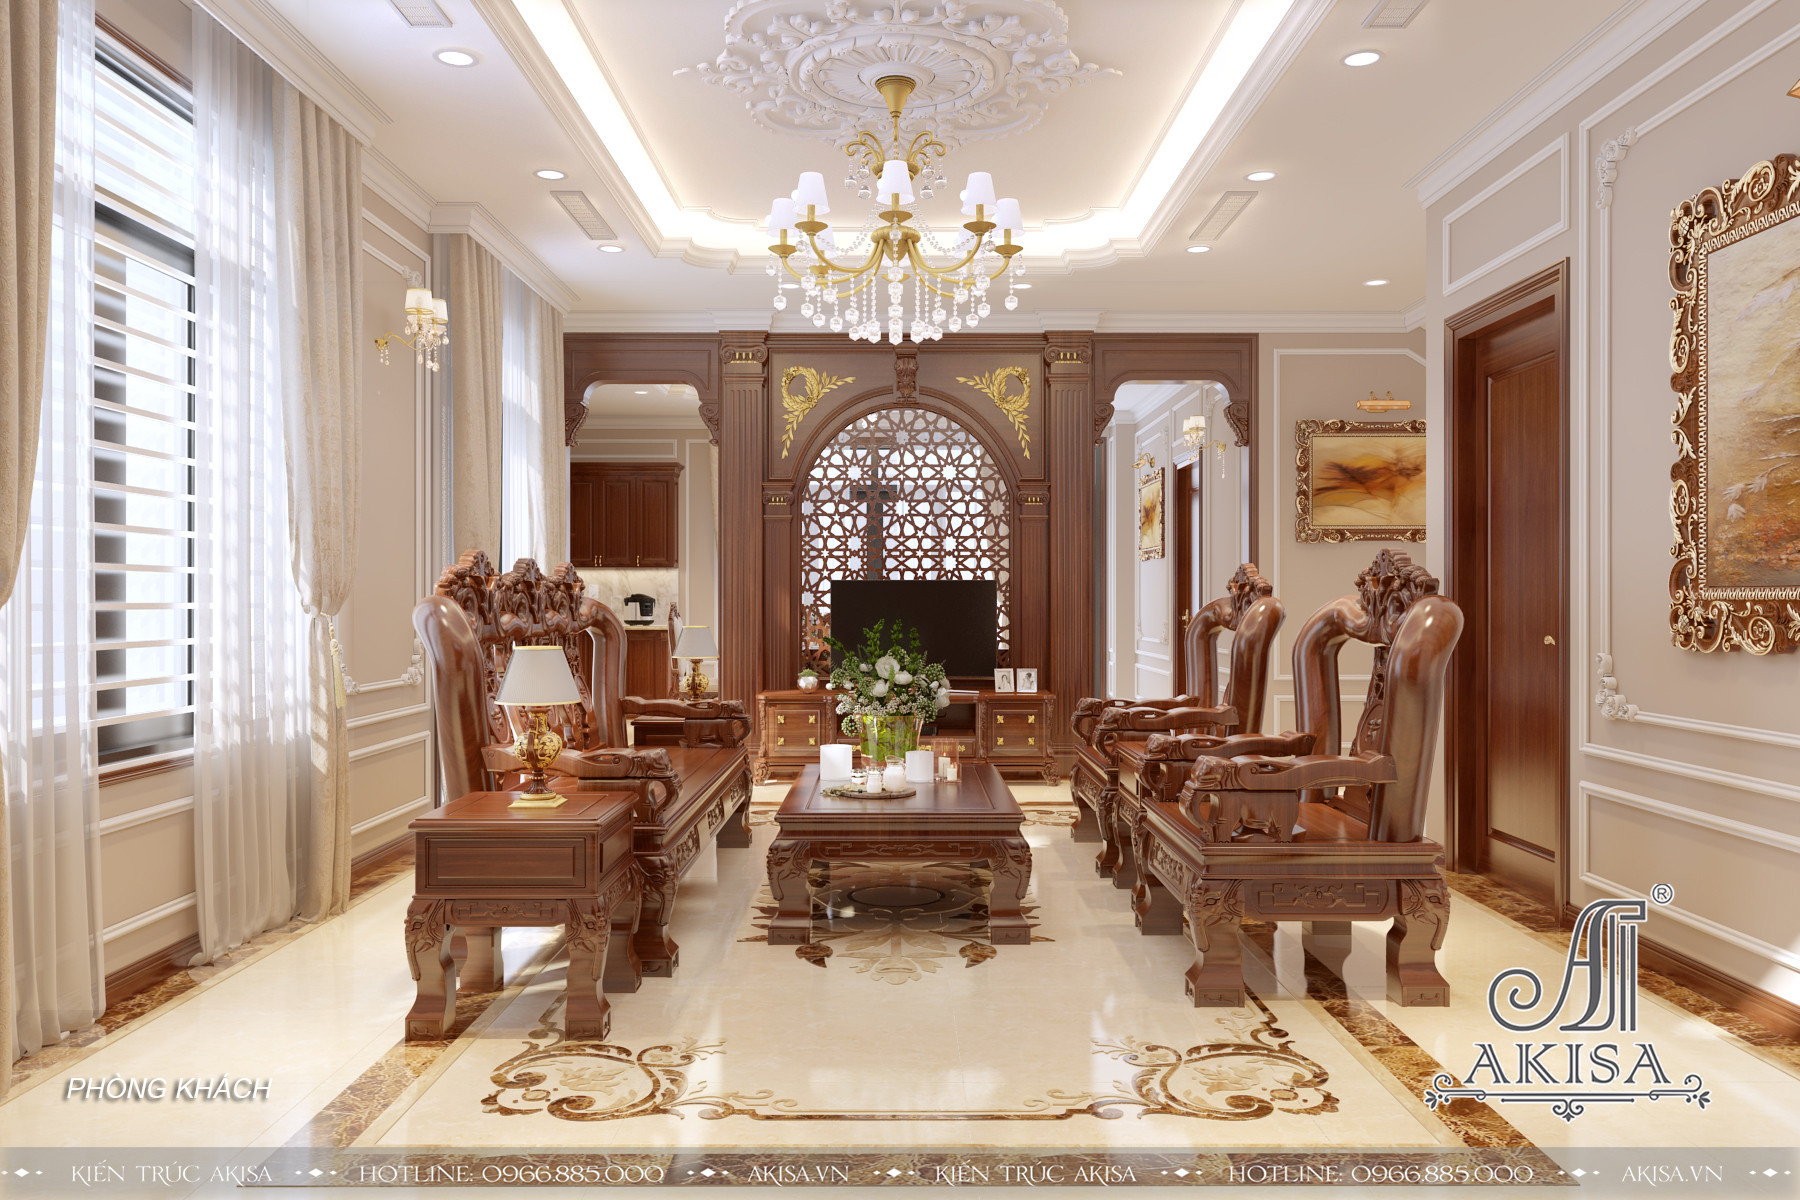 Phòng khách thiết kế theo phong cách tân cổ điển với nội thất bằng gỗ tự nhiên cao cấp sang trọng, đẳng cấp